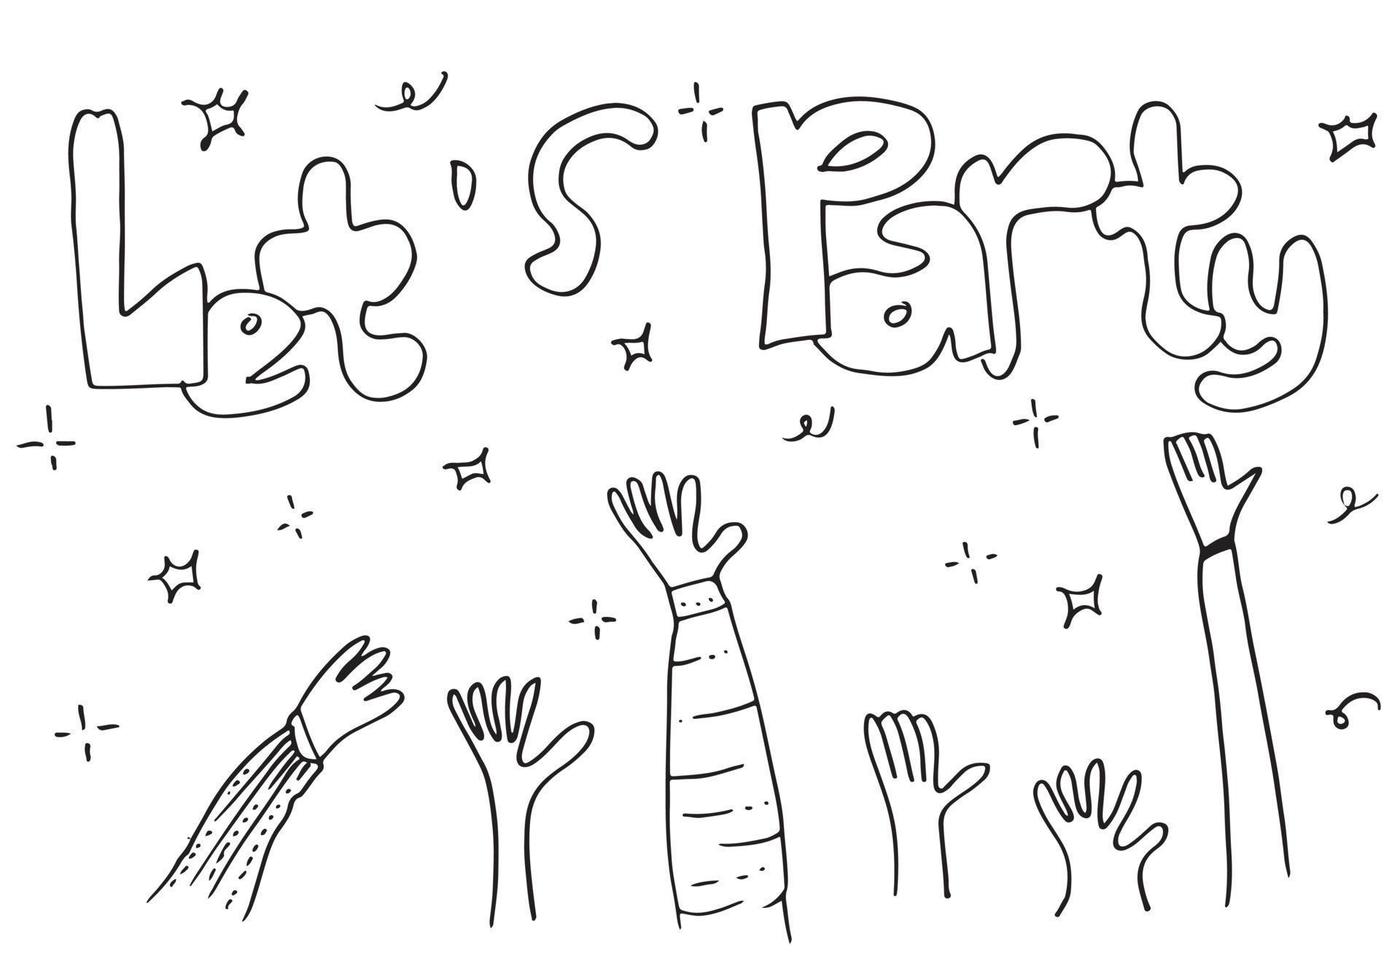 applaus hand zeichnen auf weißem hintergrund mit let's party text.vector illustration. vektor